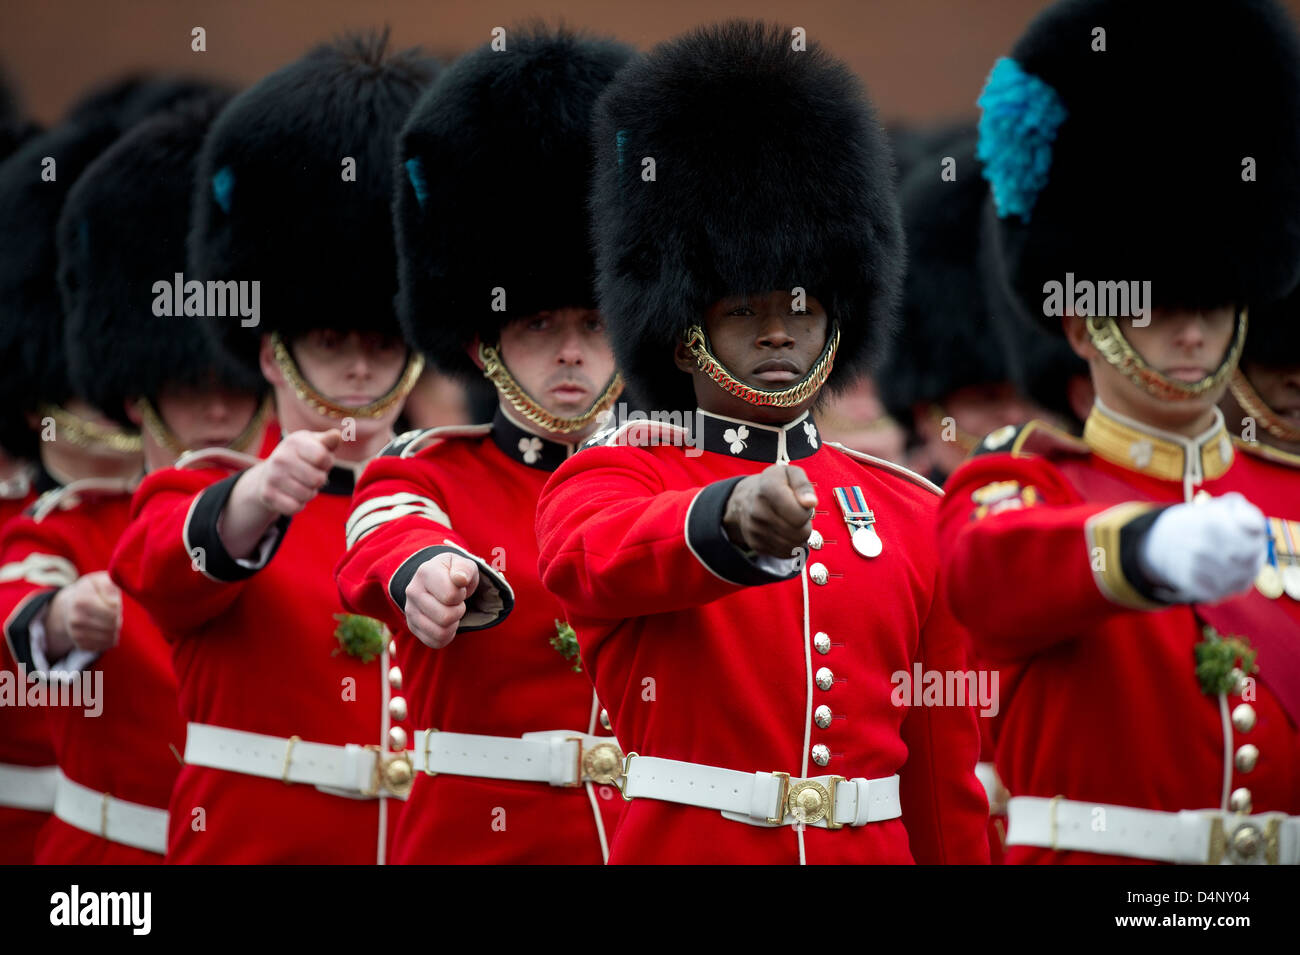 Irish Guards, servant dans l'armée britannique sur le défilé à Aldershot 17/3/13 Banque D'Images